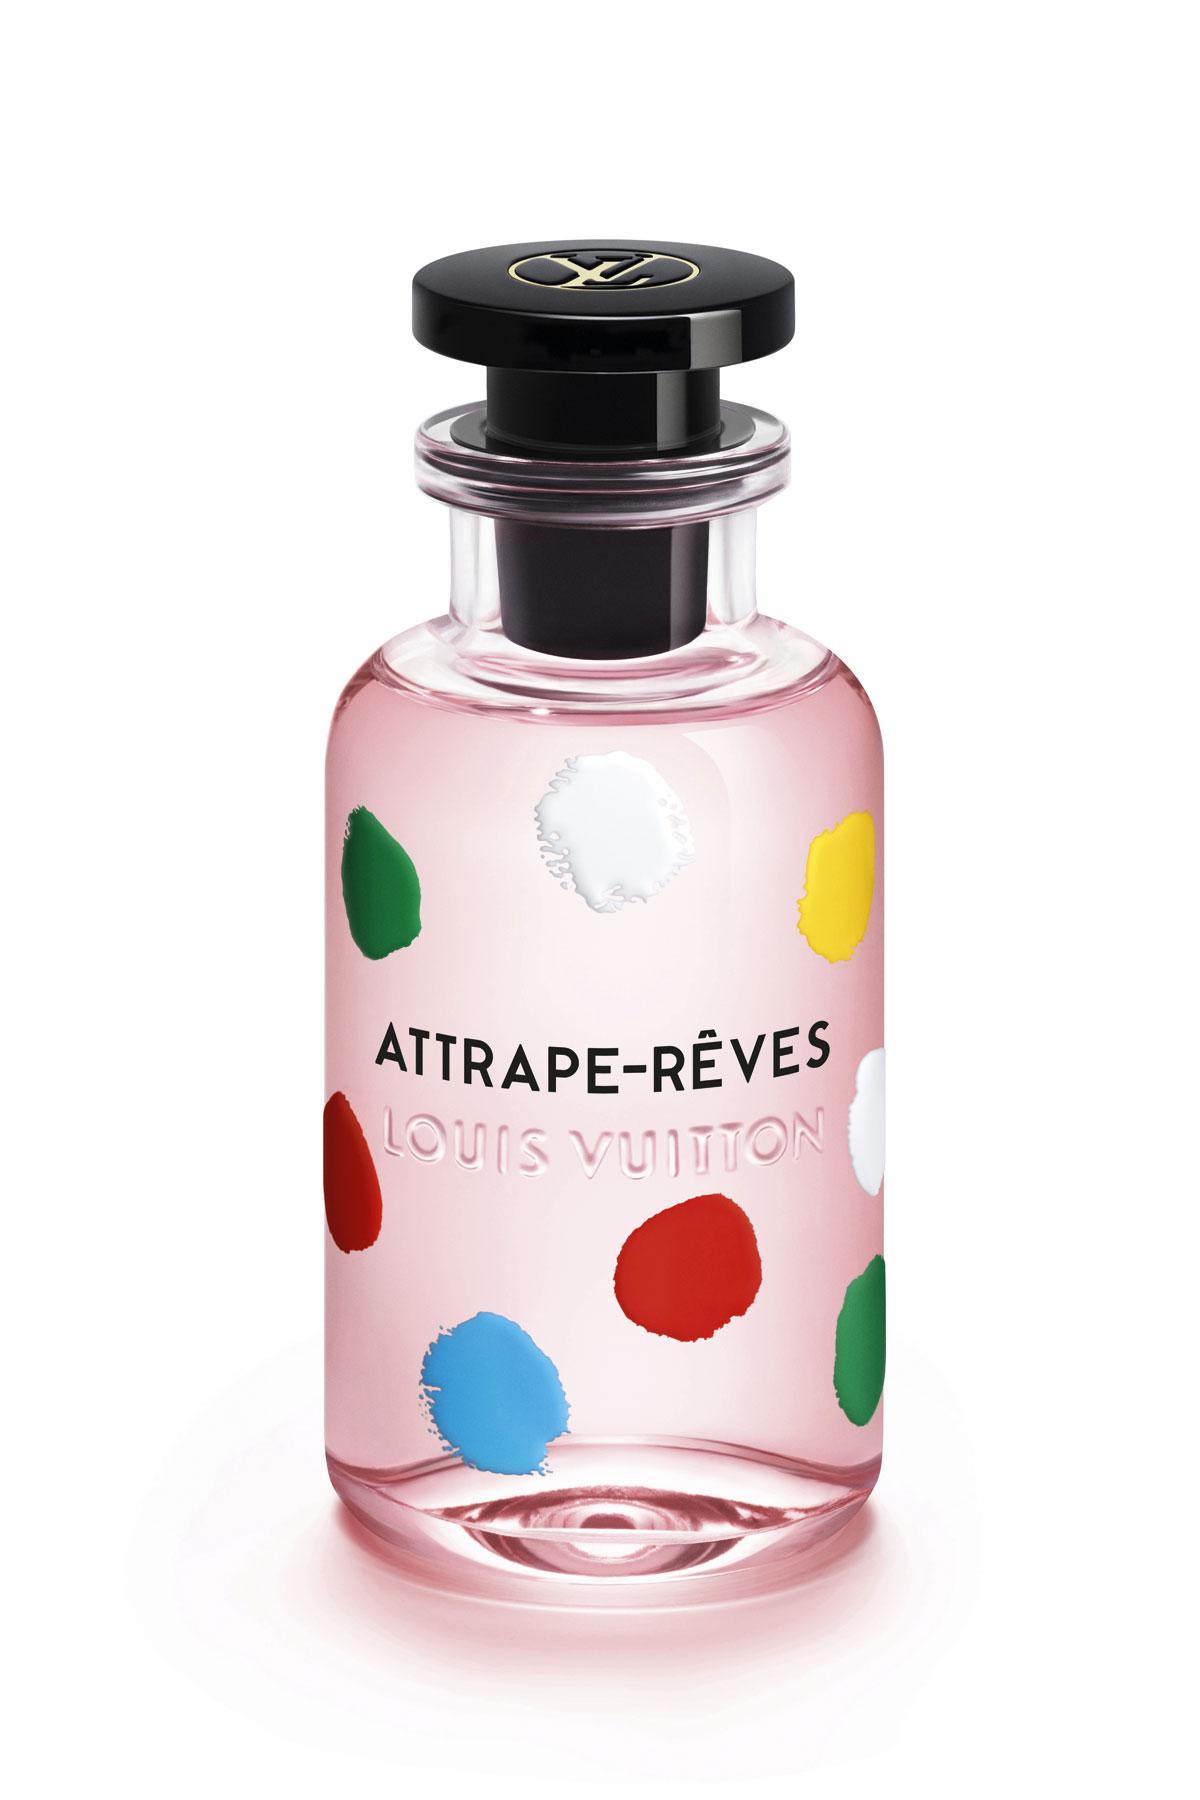 Eau de Parfum Attrape-Rêves, Louis Vuitton x Yayoi Kusama, 320 euros les 100 ml.